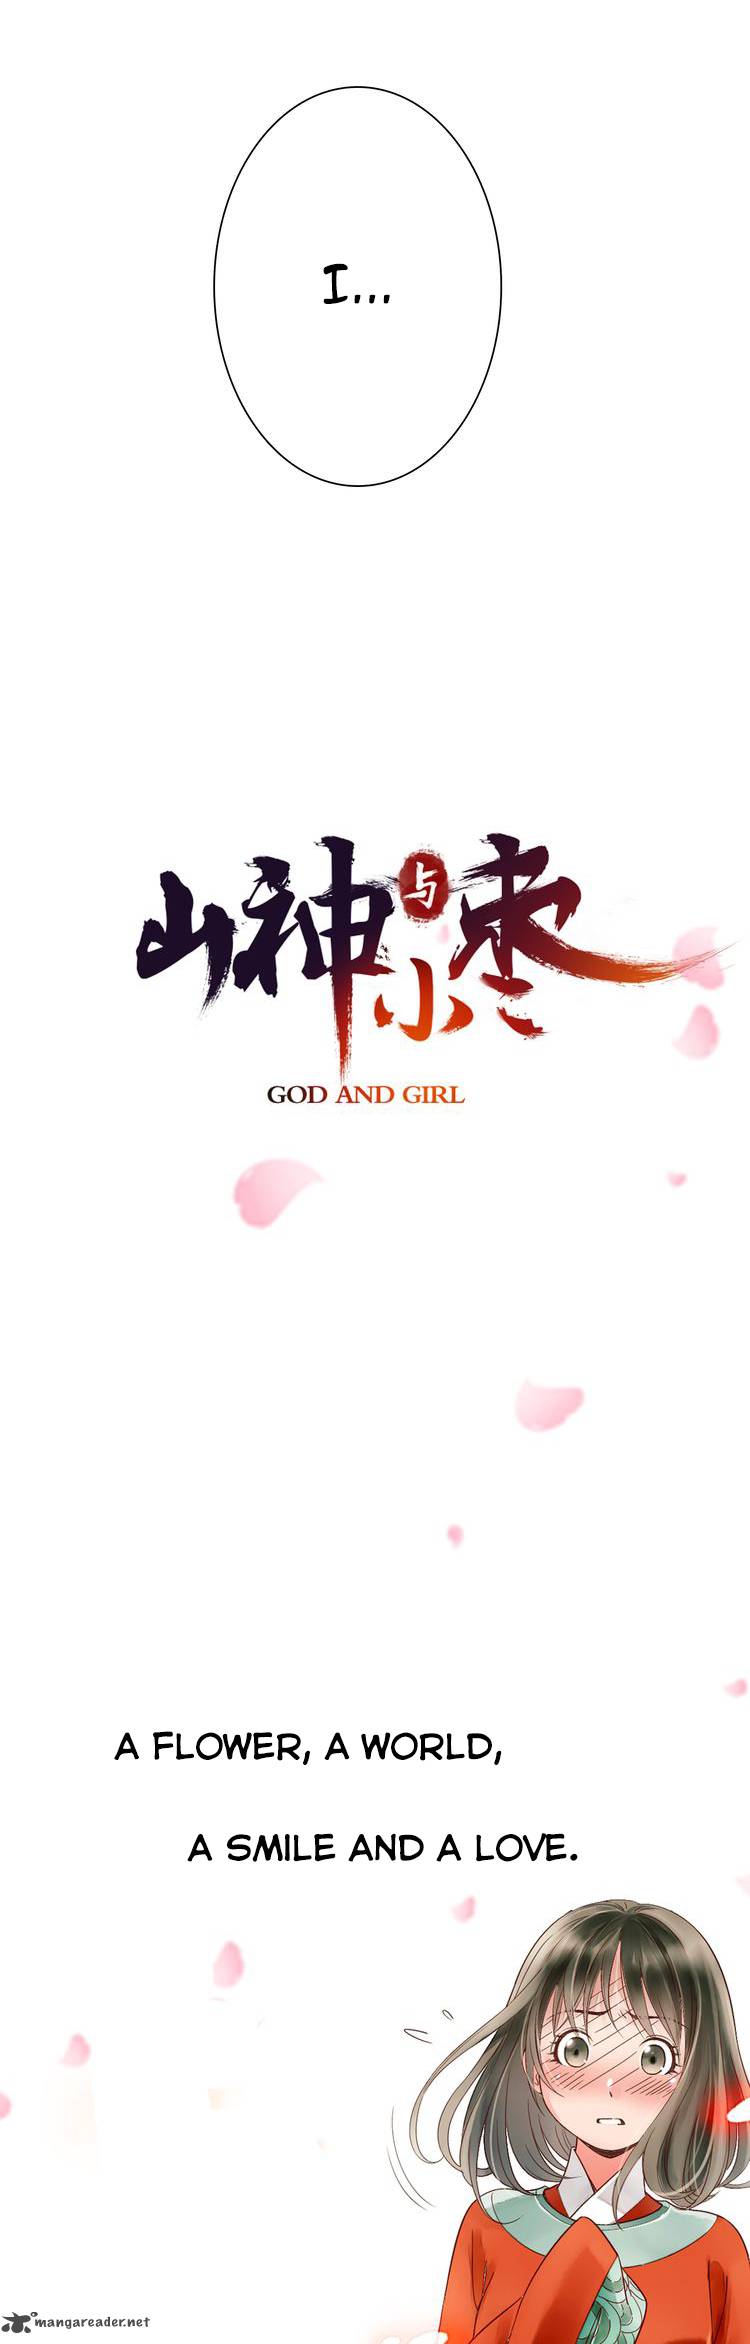 god_and_girl_0_7